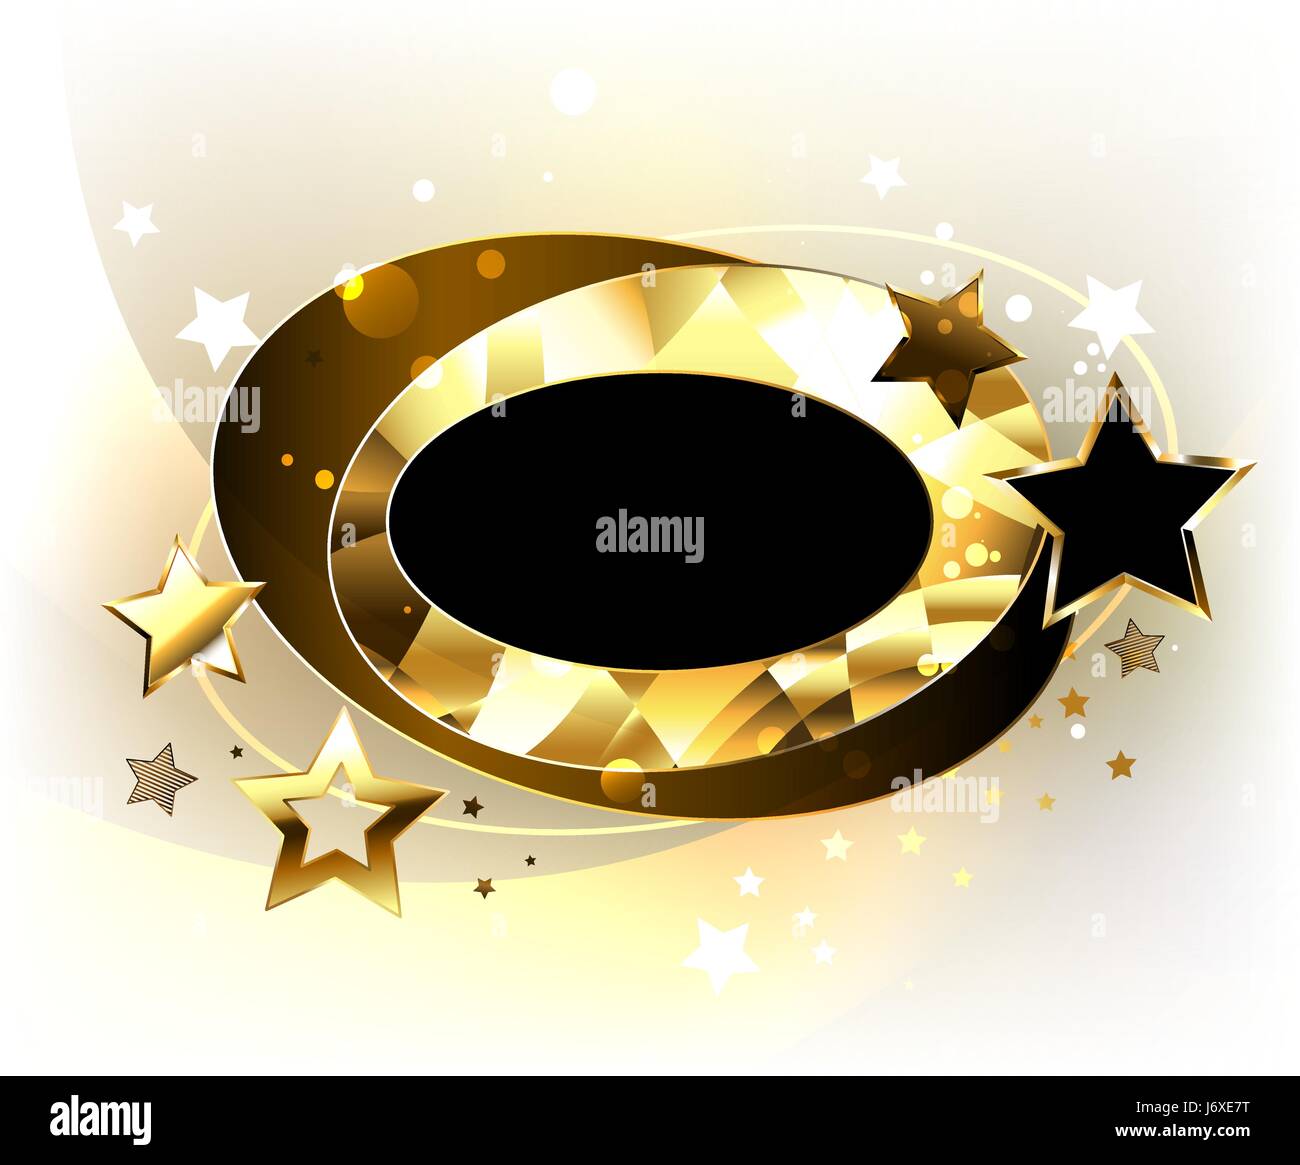 Dynamische, Oval, polygonale, golden Banner mit gold und schwarz Sterne auf einem hellen Hintergrund. Design mit goldenen Sternen. Polygonale Banner. Stock Vektor